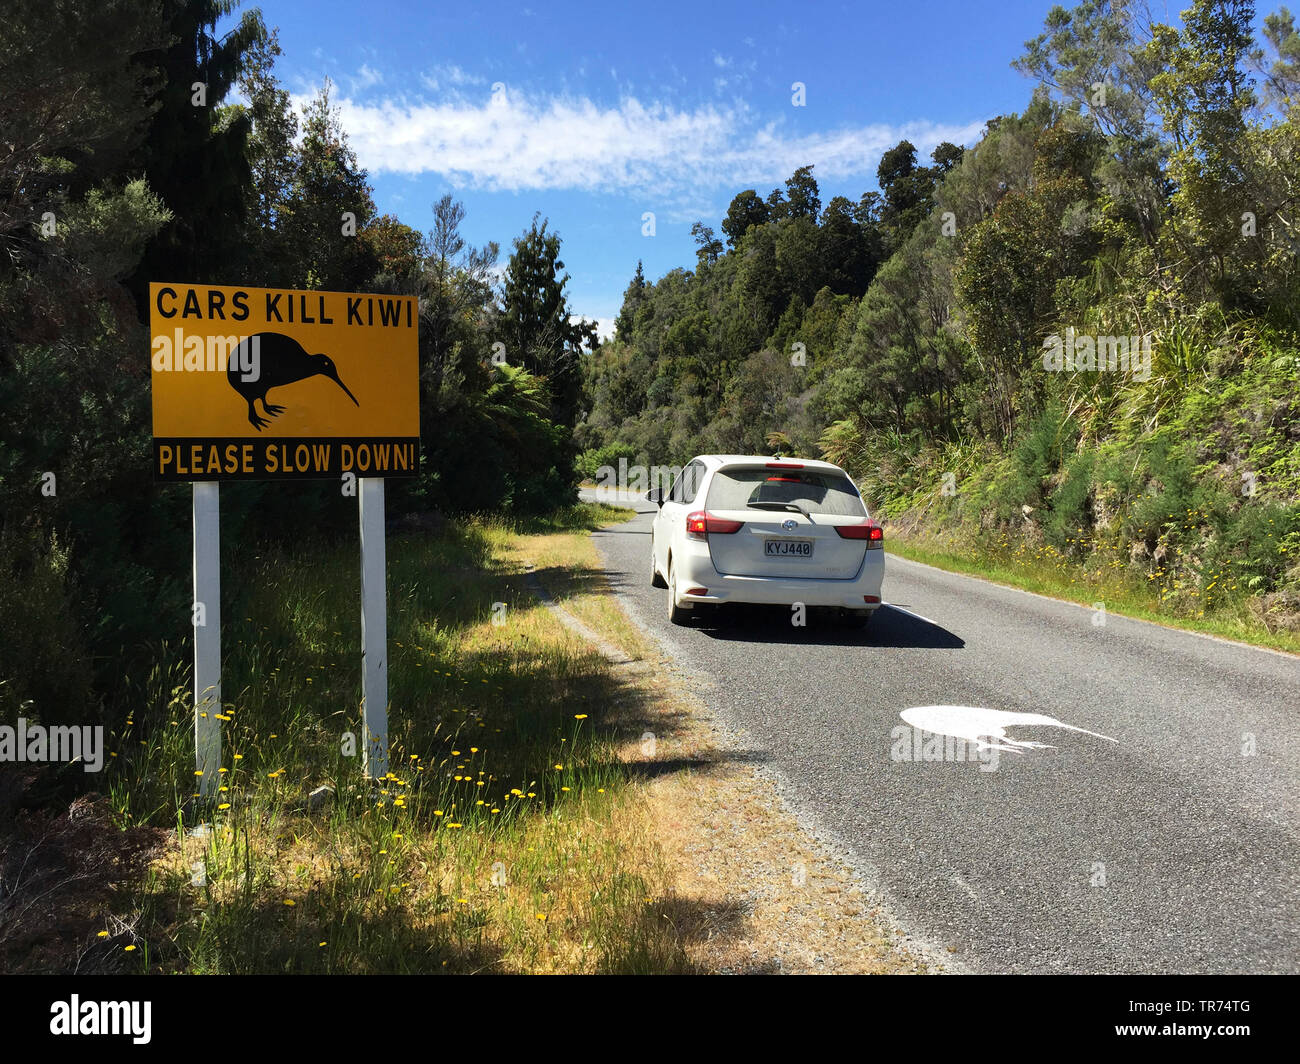 Okarito kiwi, Rowi, Okarito brown kiwi (Apteryx rowi), grandi cartelli stradali accanto alla strada sono stati istituiti per informare il conducente di eventuali Okarito Kiwi sulla strada, in una delle più rare specie di uccelli nel mondo., Nuova Zelanda, Isola Meridionale, Okarito Foto Stock